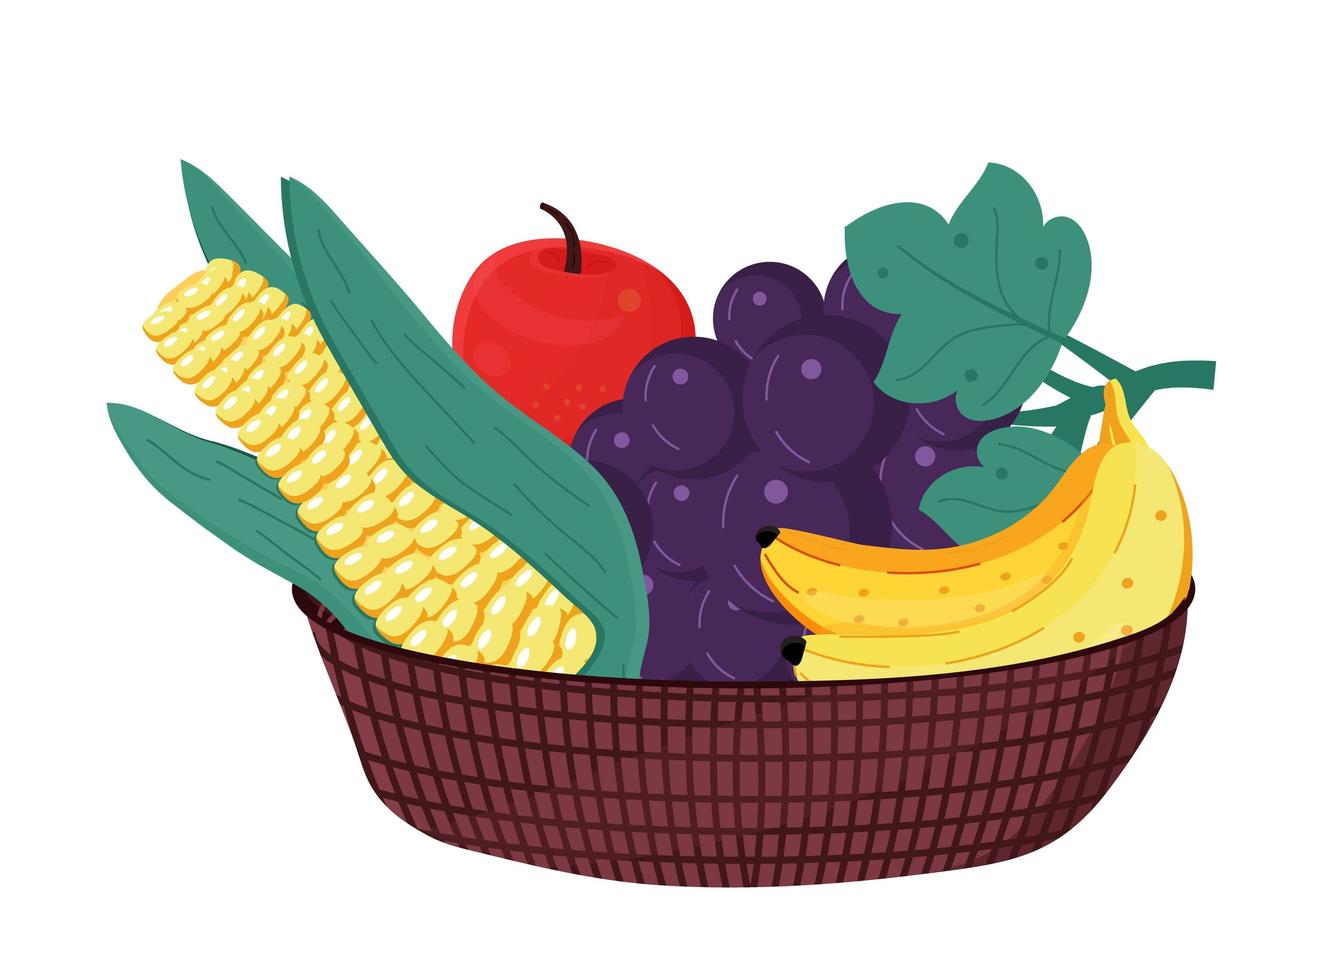 frukt i träskål. majs, banan, äpple, vindruvor är inuti korgen. hälsosam kost, skörd koncept vektor